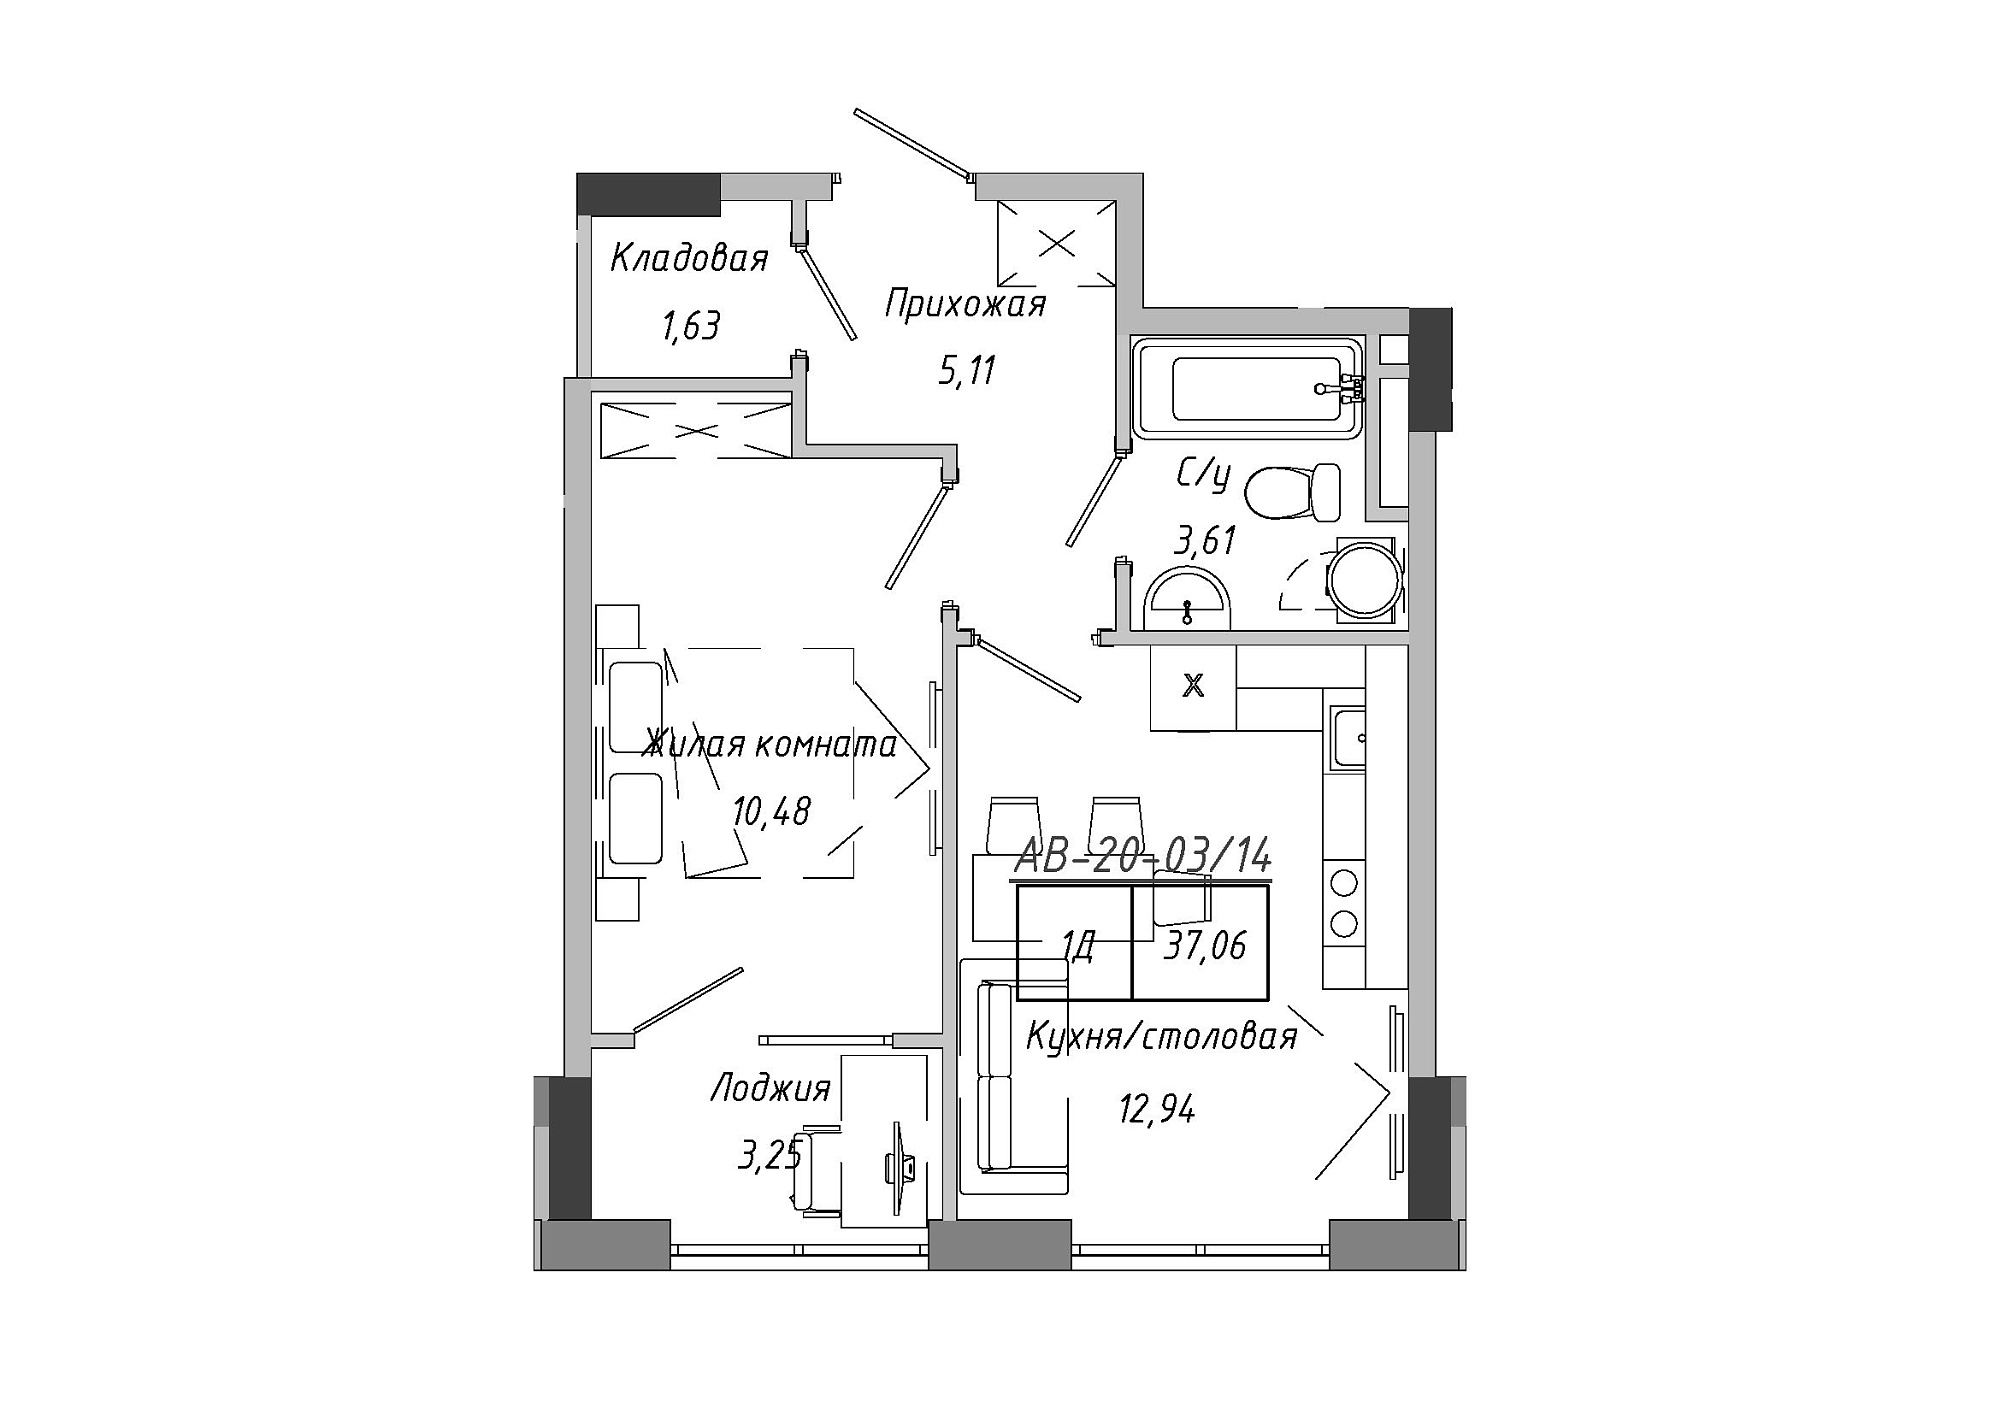 Планировка 1-к квартира площей 37.06м2, AB-20-03/00014.